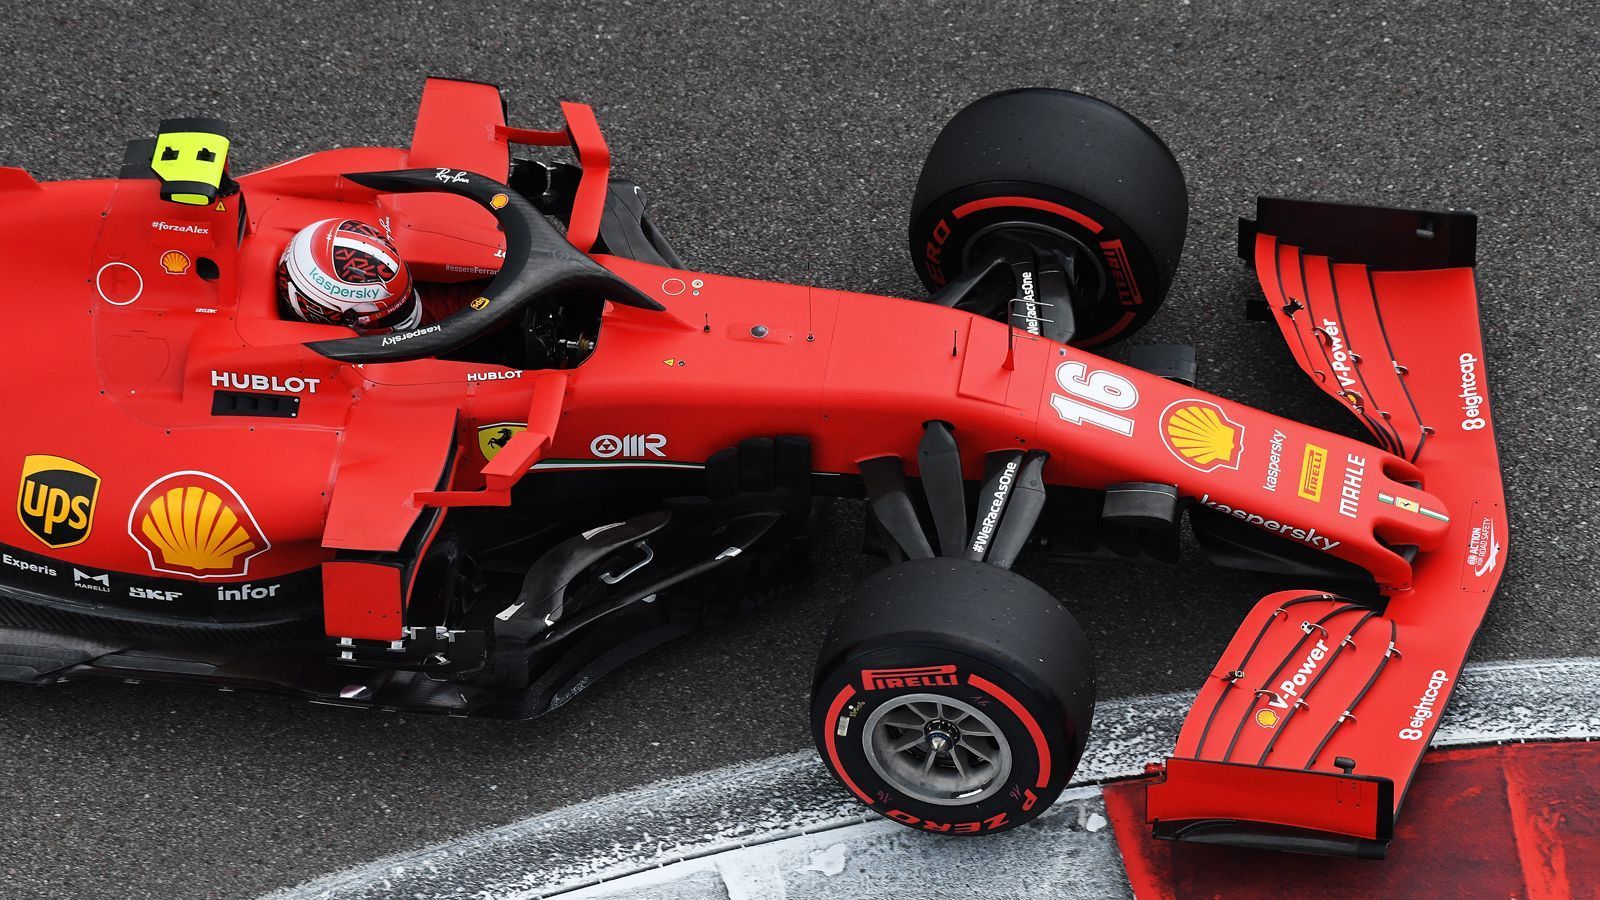 
                <strong>Charles Leclerc (Ferrari)</strong><br>
                3 Strafpunkte (2 Punkte verfallen am 13.10.2020)
              